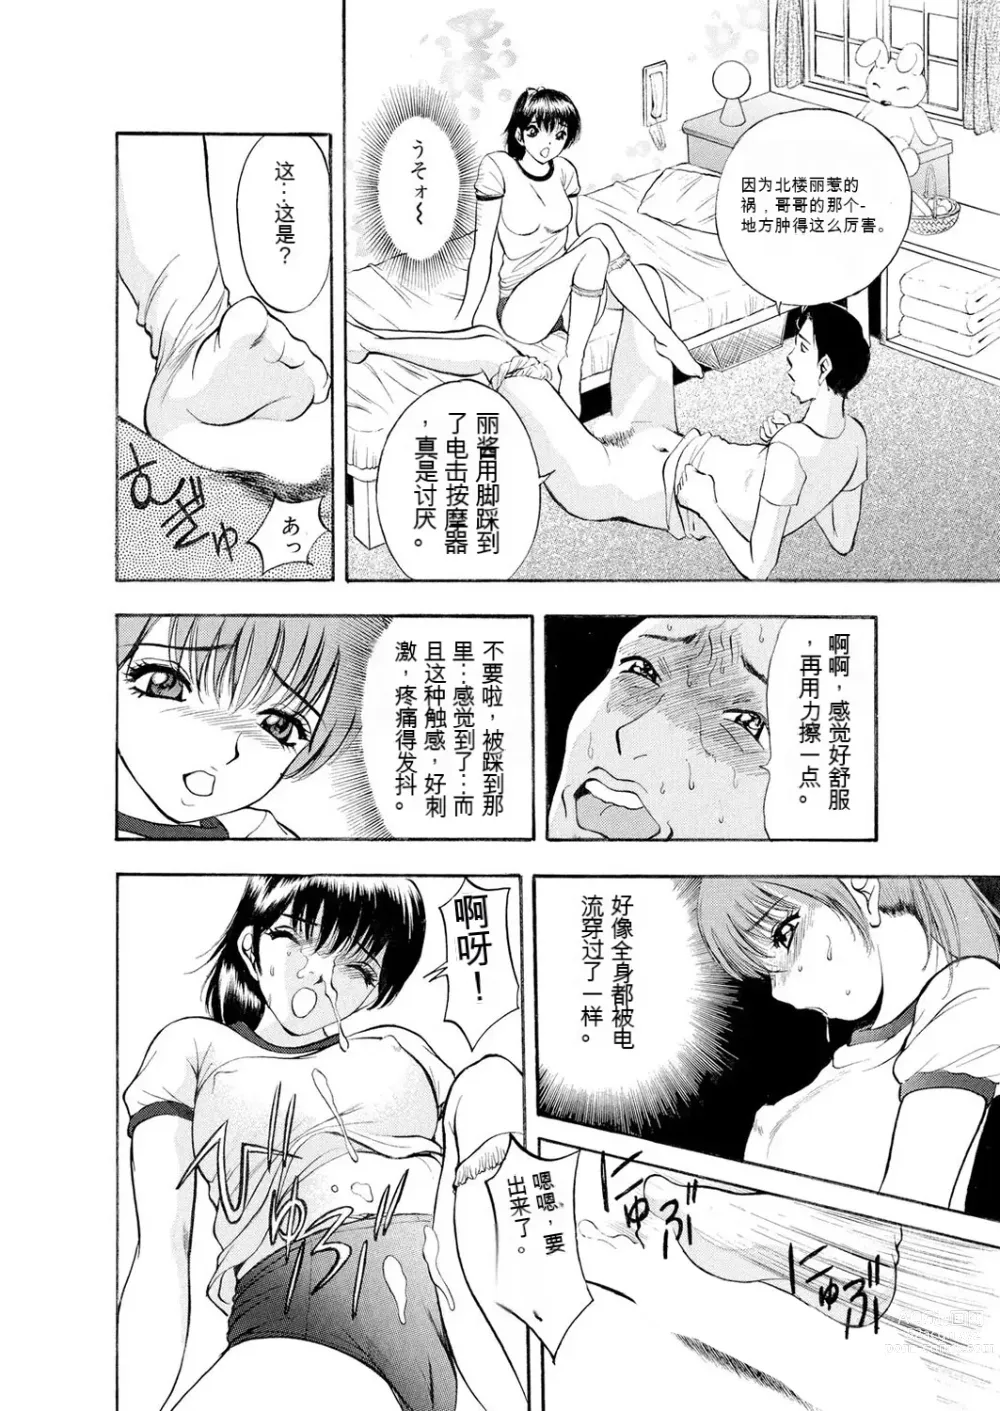 Page 27 of manga Netorare